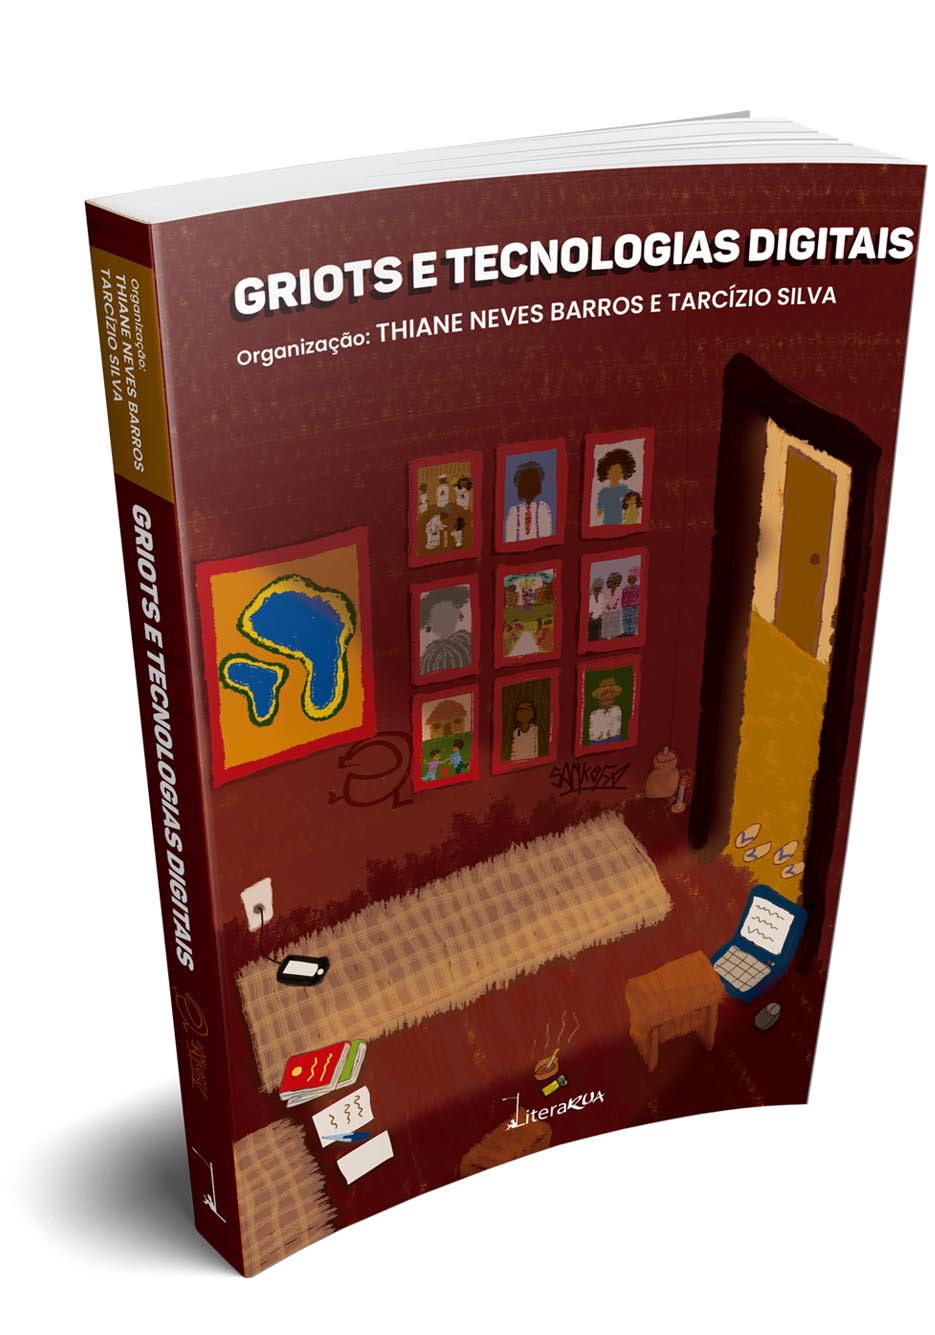 Griots e Tecnologias Digitais - Thiane Neves Barros e Tarcízio Silva - LiteraRUA